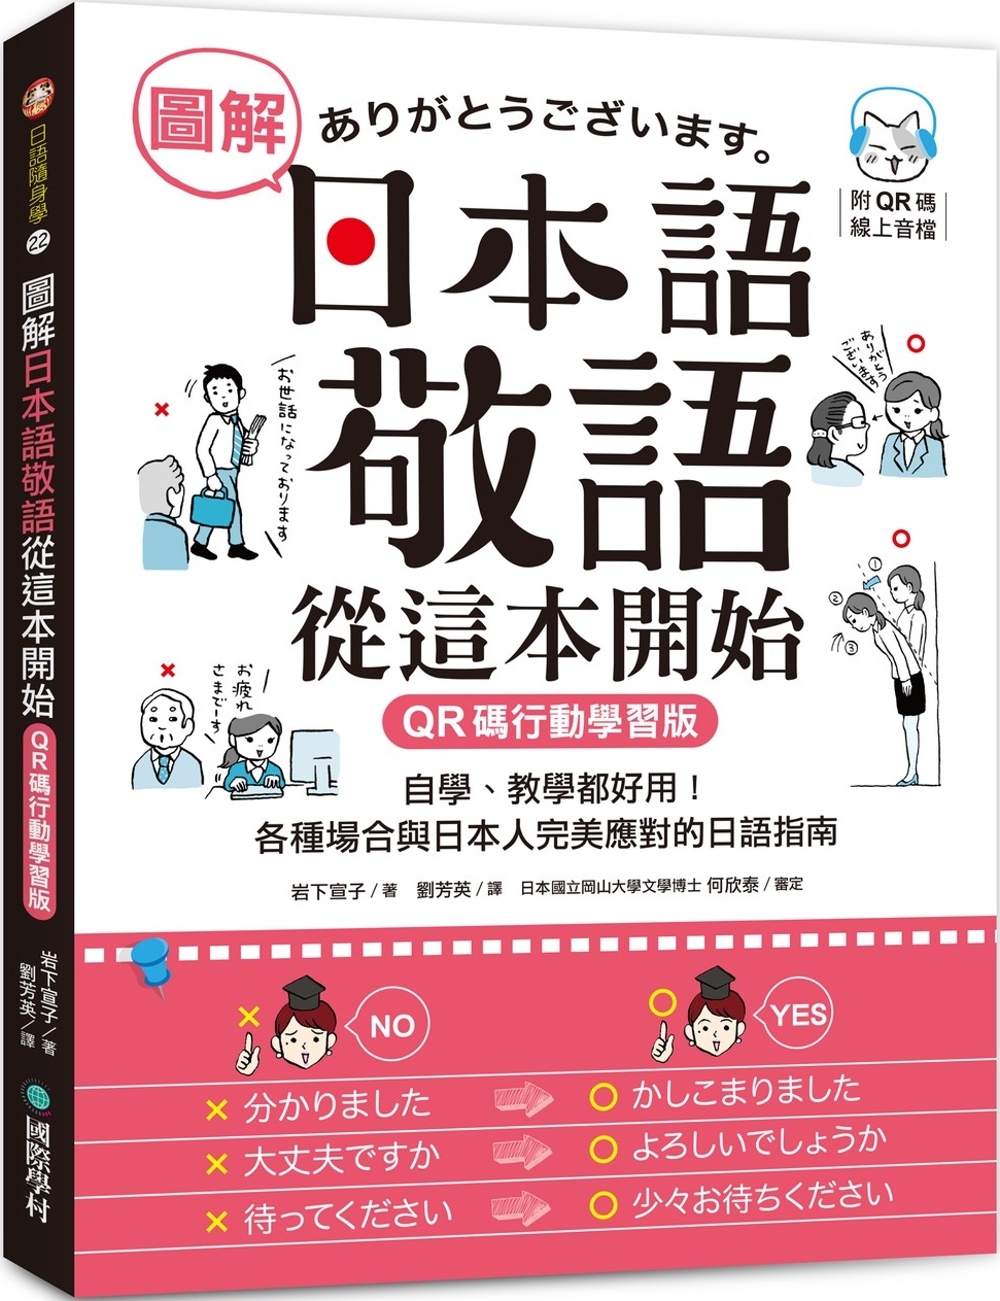 圖解日本語敬語從這本開始【QR碼行動學習版】：自學、教學都好...